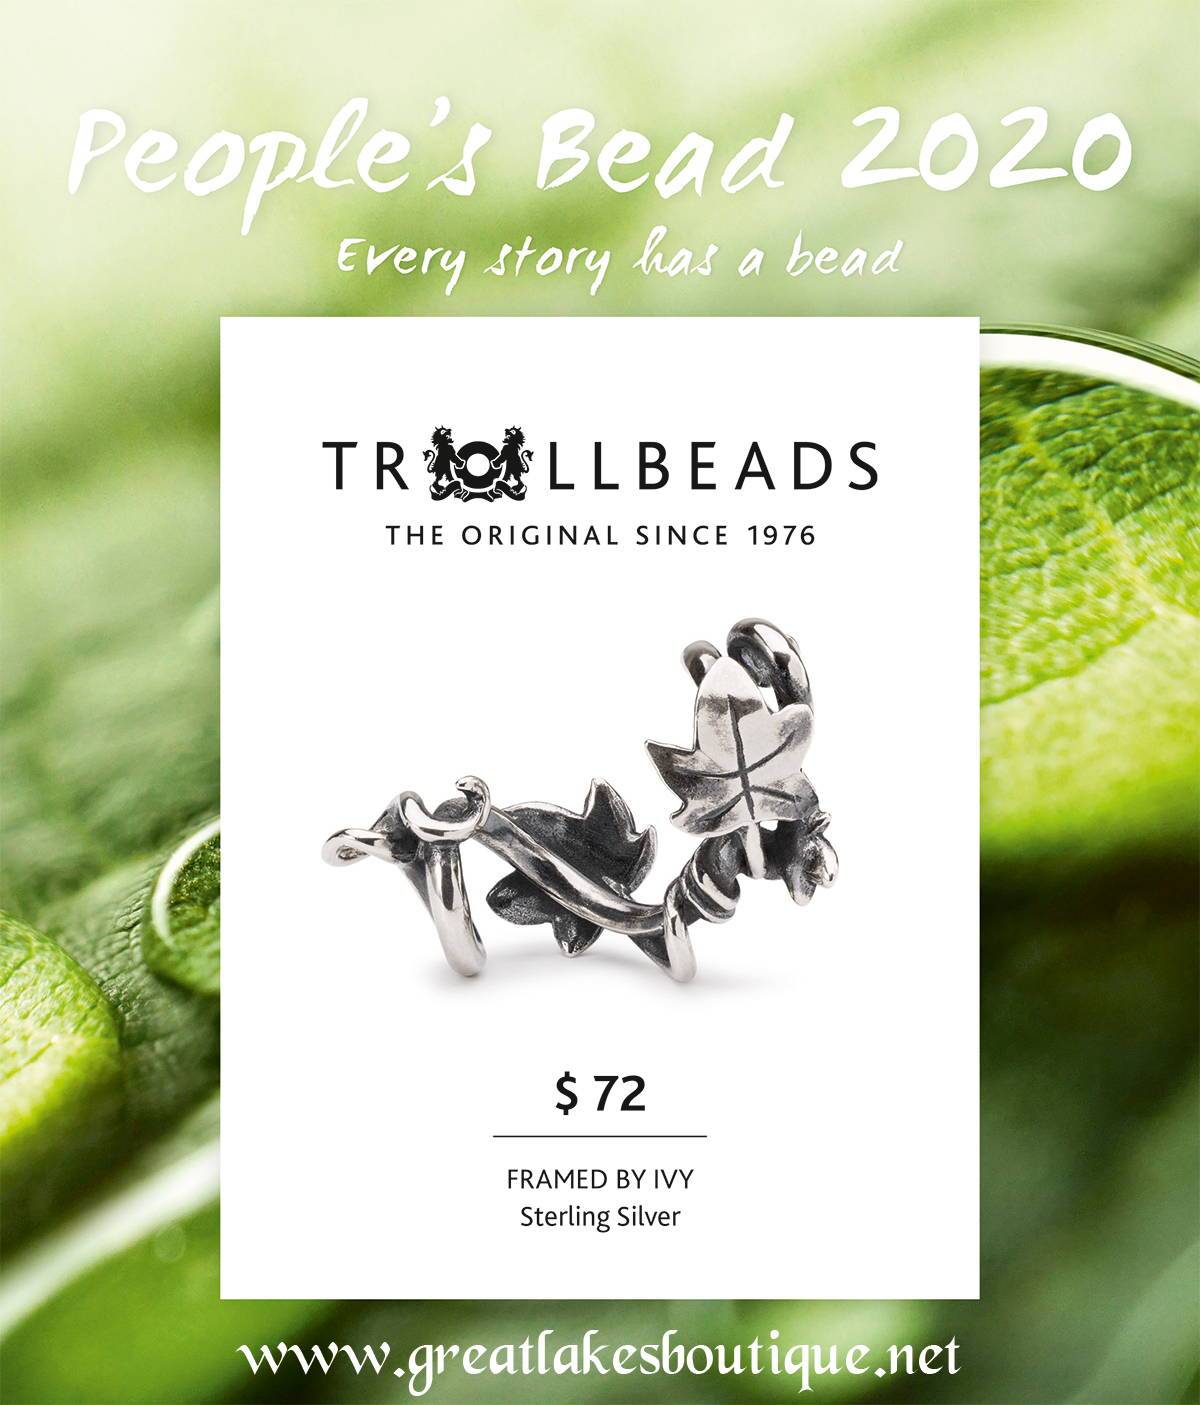 Trollbeads Framed by Ivy - Trollbeads People's Bead 2020